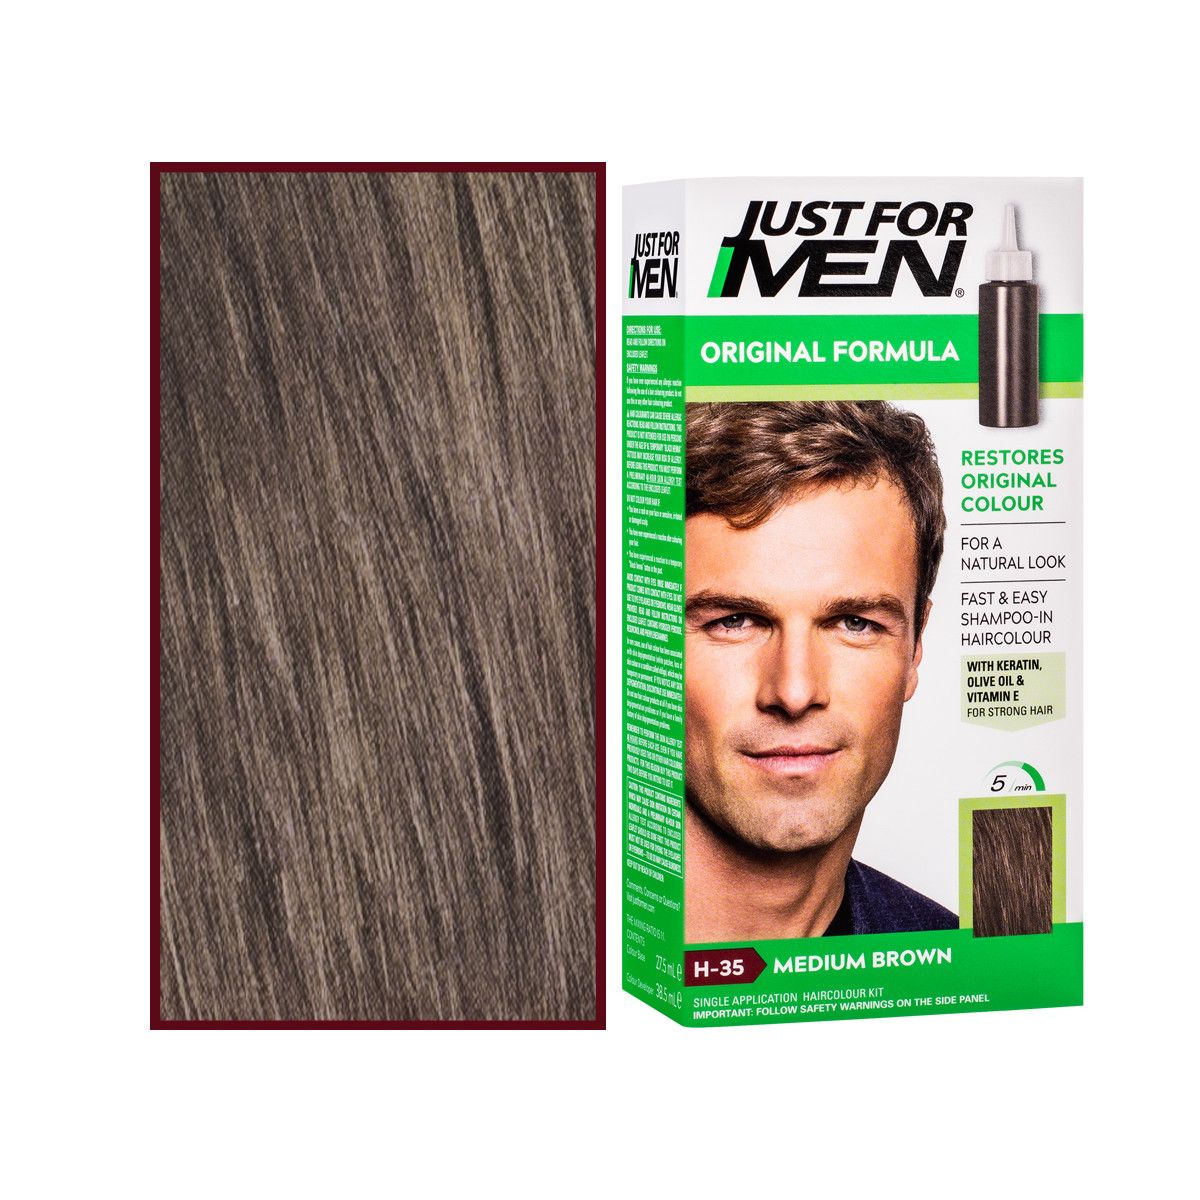 Just For Men – odsiwiacz do włosów dla mężczyzn, 66 ml kolor Medium Brown H35 Średni Brązowy